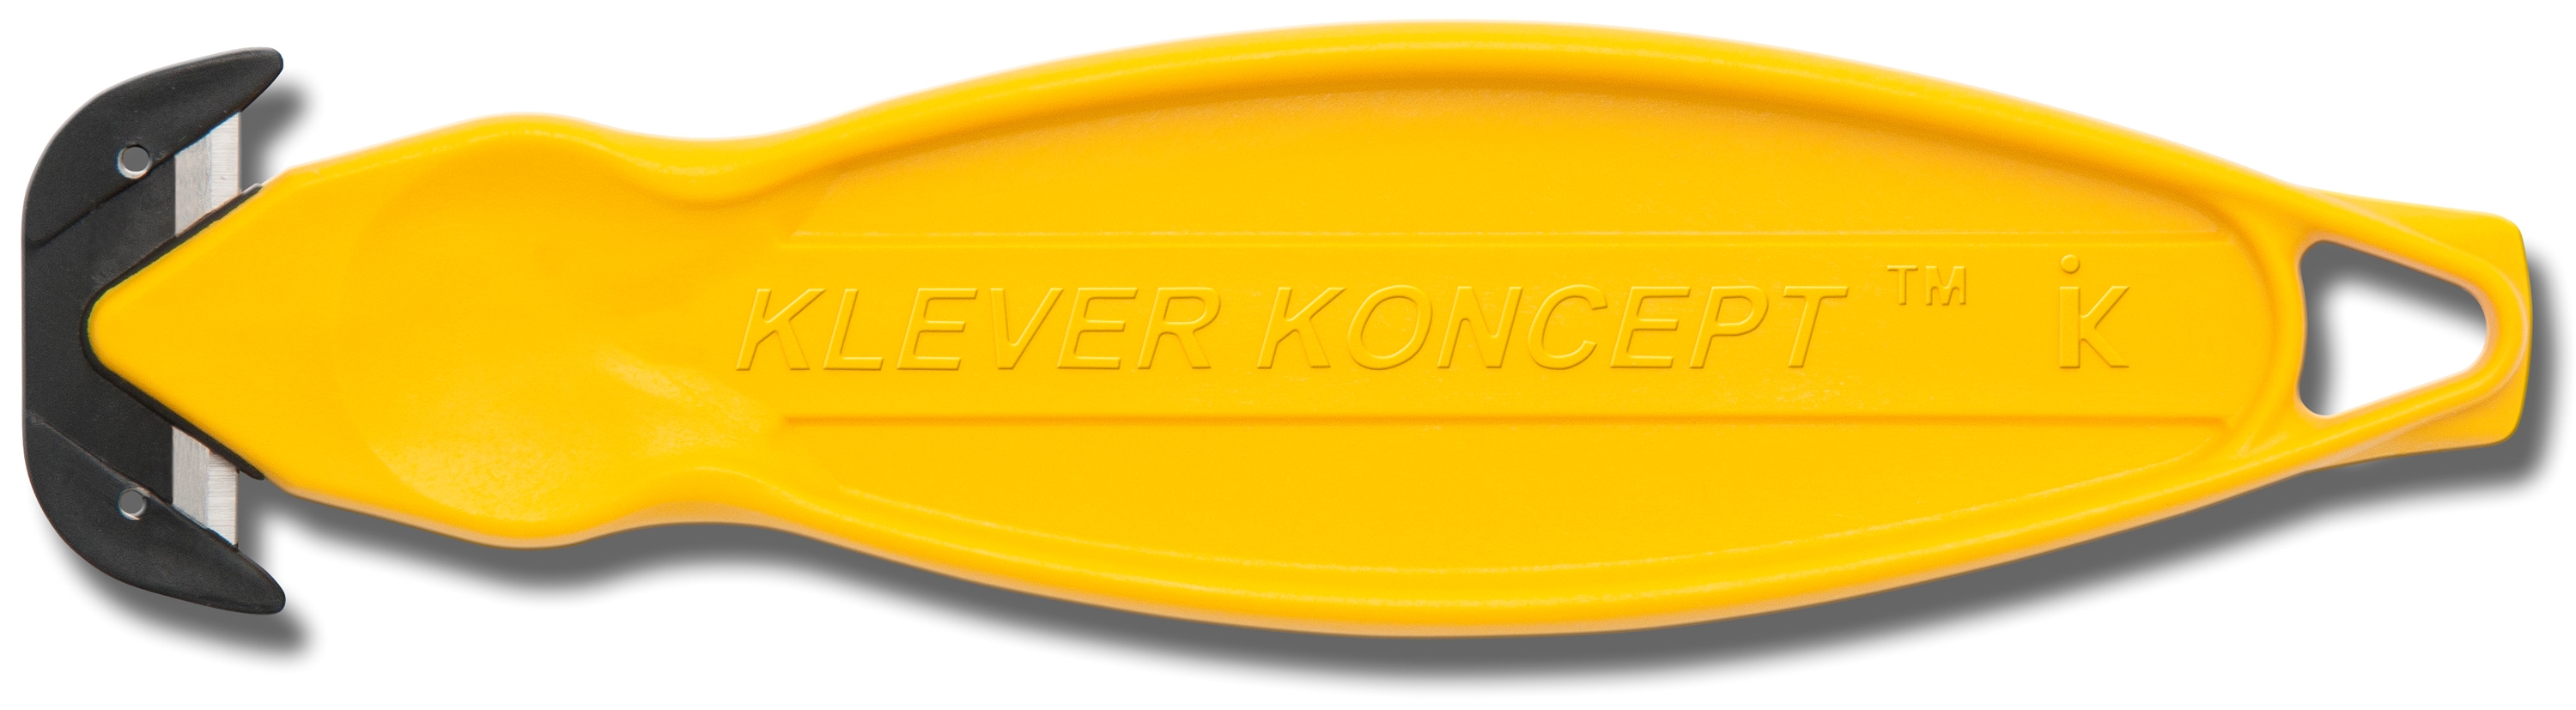 Picture of Klever Kutter de handige dozen opener koncept geel